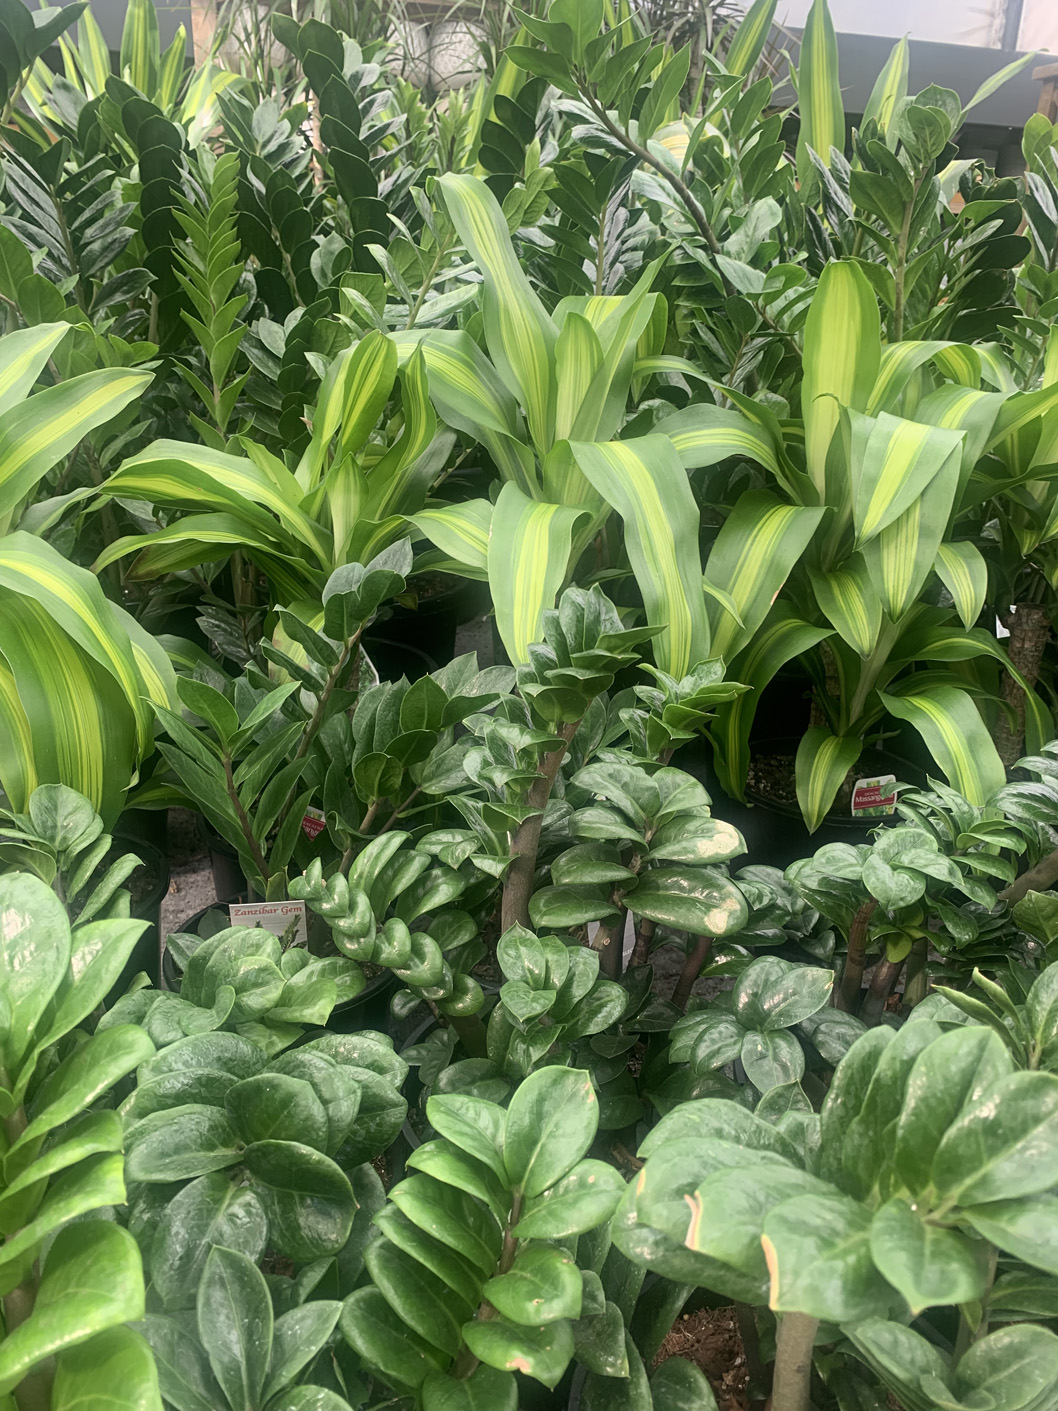 An indoor plant ‘jungle’ (Image: Karen Smith)